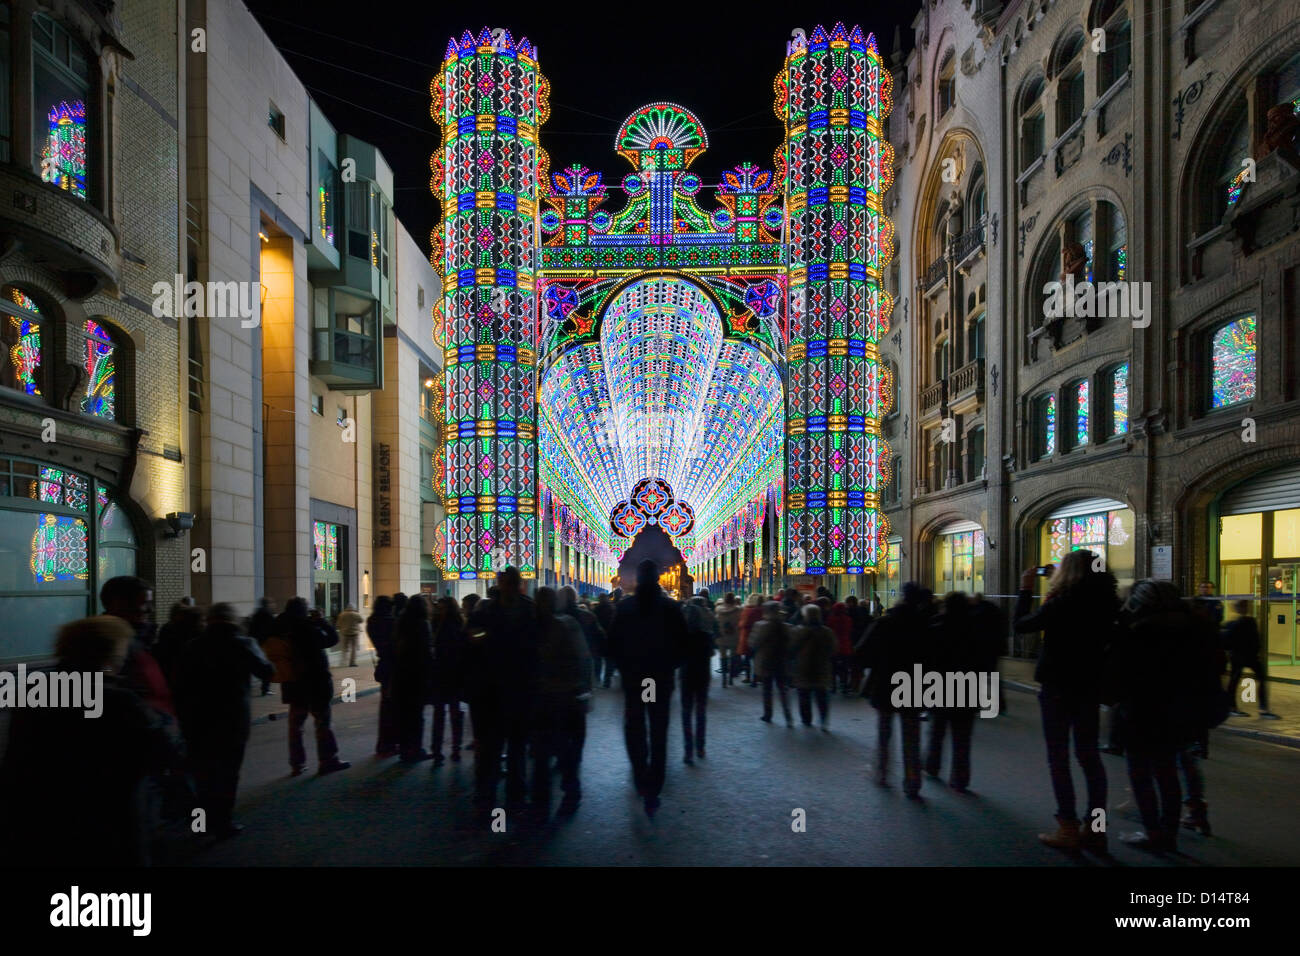 Bunt beleuchtete Bogen am Festival of Lights / Light Festival in der Stadt Ghent in der Nacht, Belgien Stockfoto